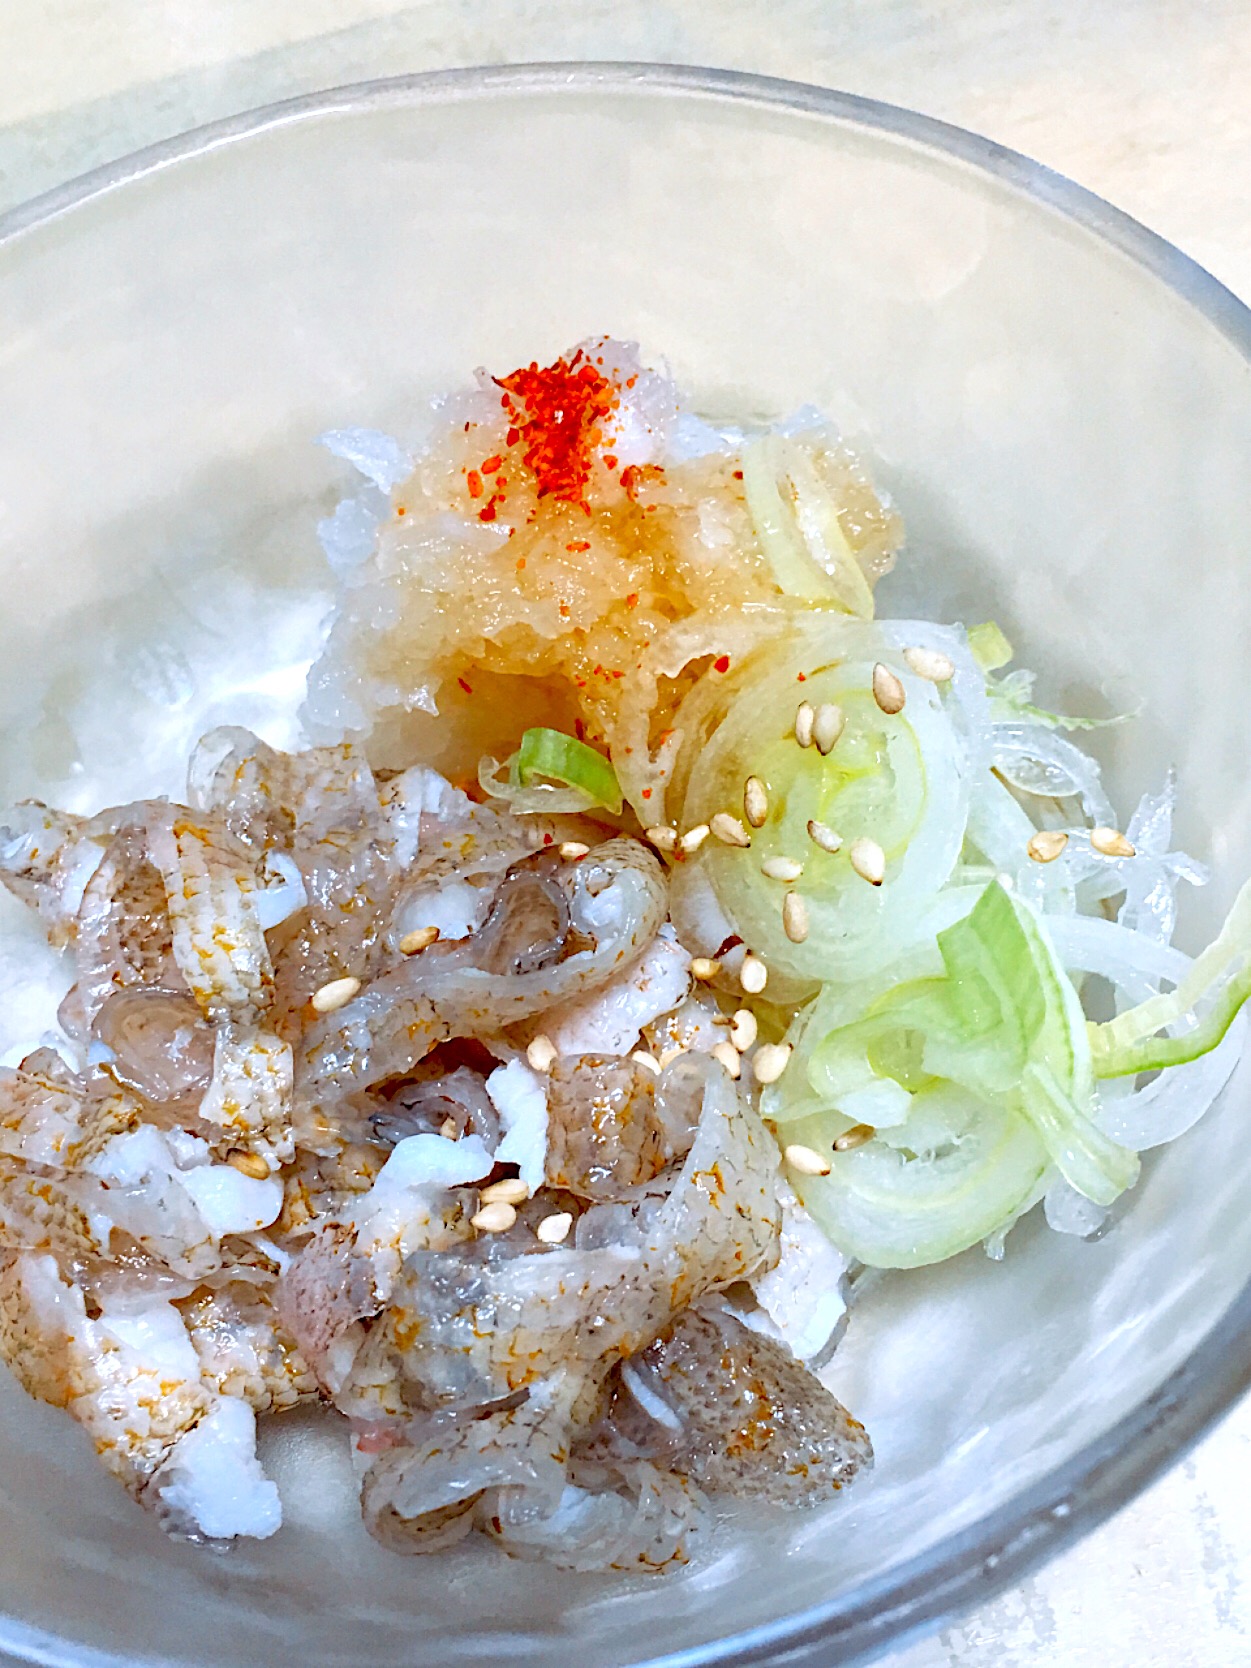 幻の高級魚 キジハタ料理のおすすめ7選 おいしい旬や選び方とは Macaroni